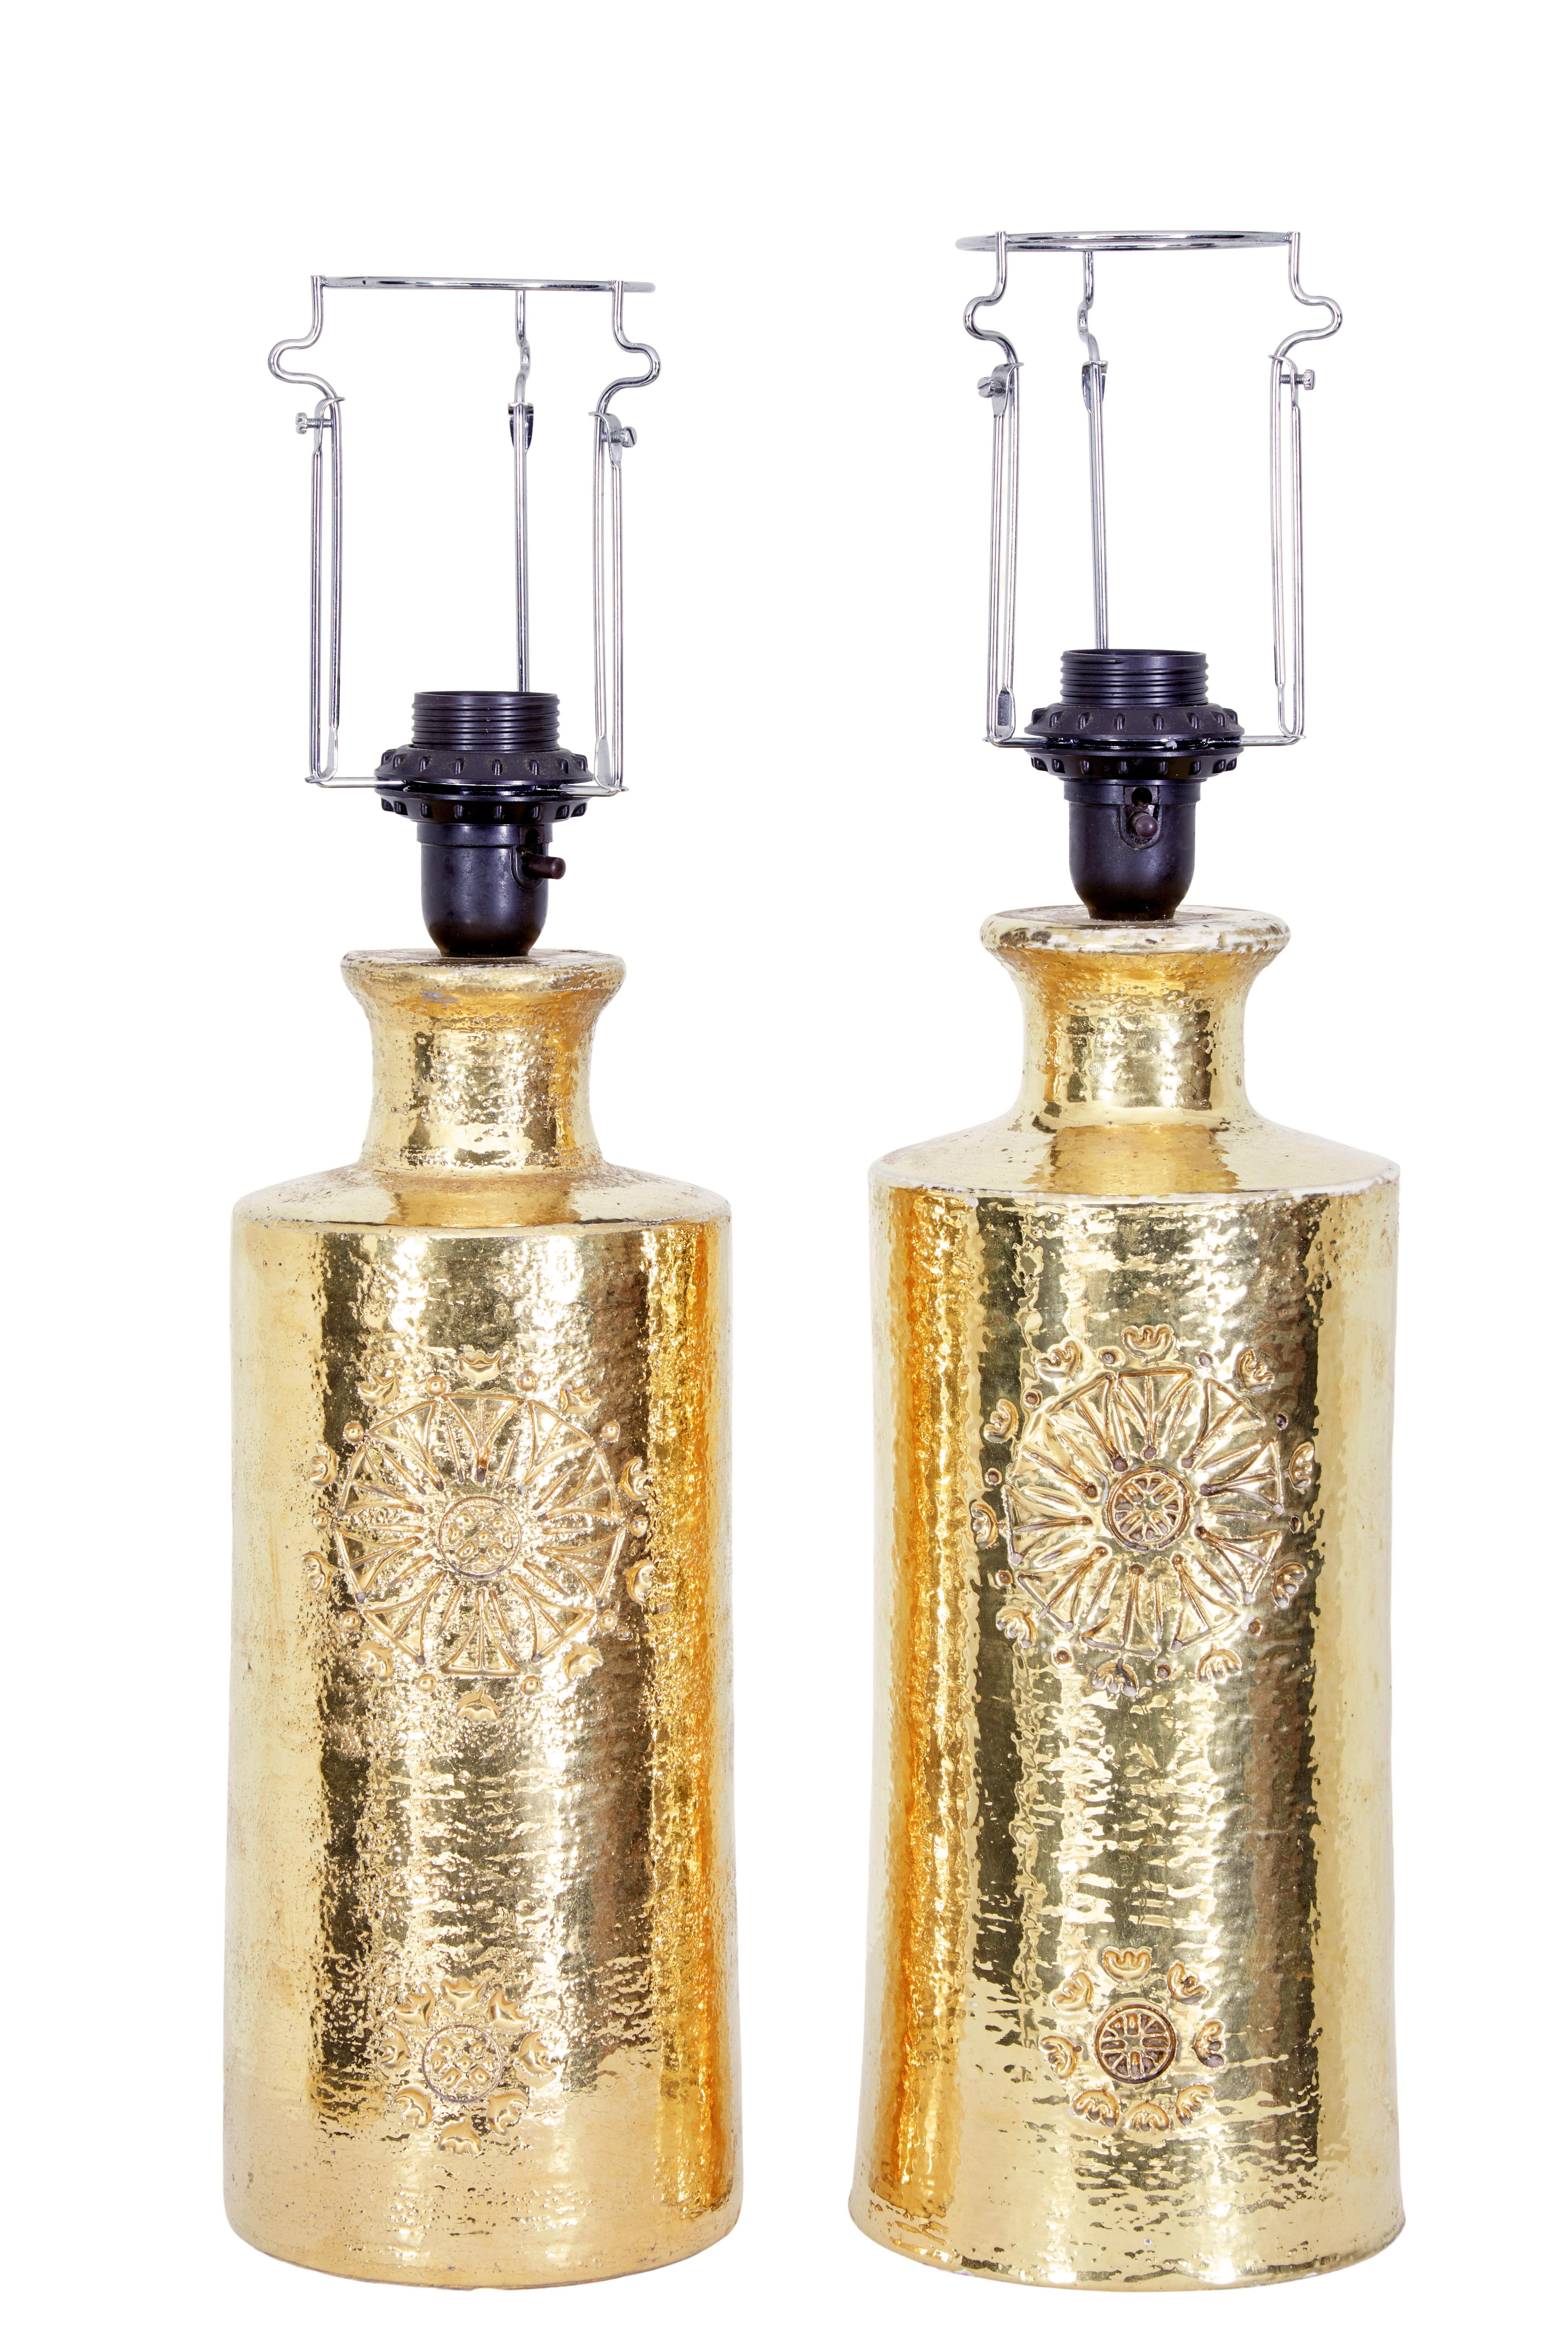 Paire de lampes dorées CIRCA du milieu du siècle pour Bergboms, vers 1970.

Lampes de table conçues par Bitossi ceramics pour le célèbre détaillant Bergboms.  Il s'agit d'une paire très proche, du même design et de la même finition, avec de légères